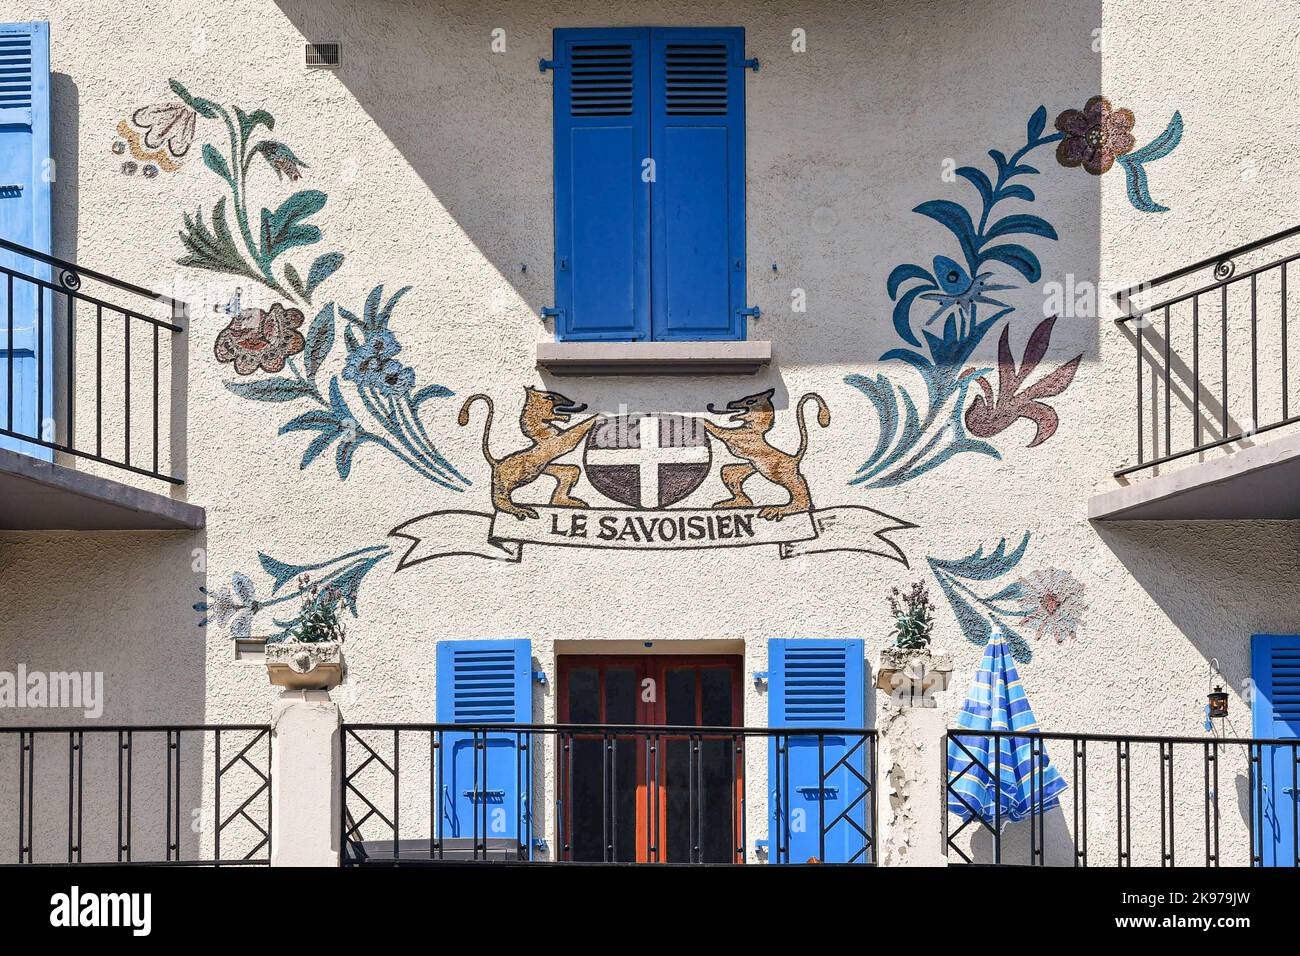 Particolare di una decorazione murale sulla facciata di un edificio nel centro della città alpina con uno stemma circondato da fiori, Chamonix, Francia Foto Stock